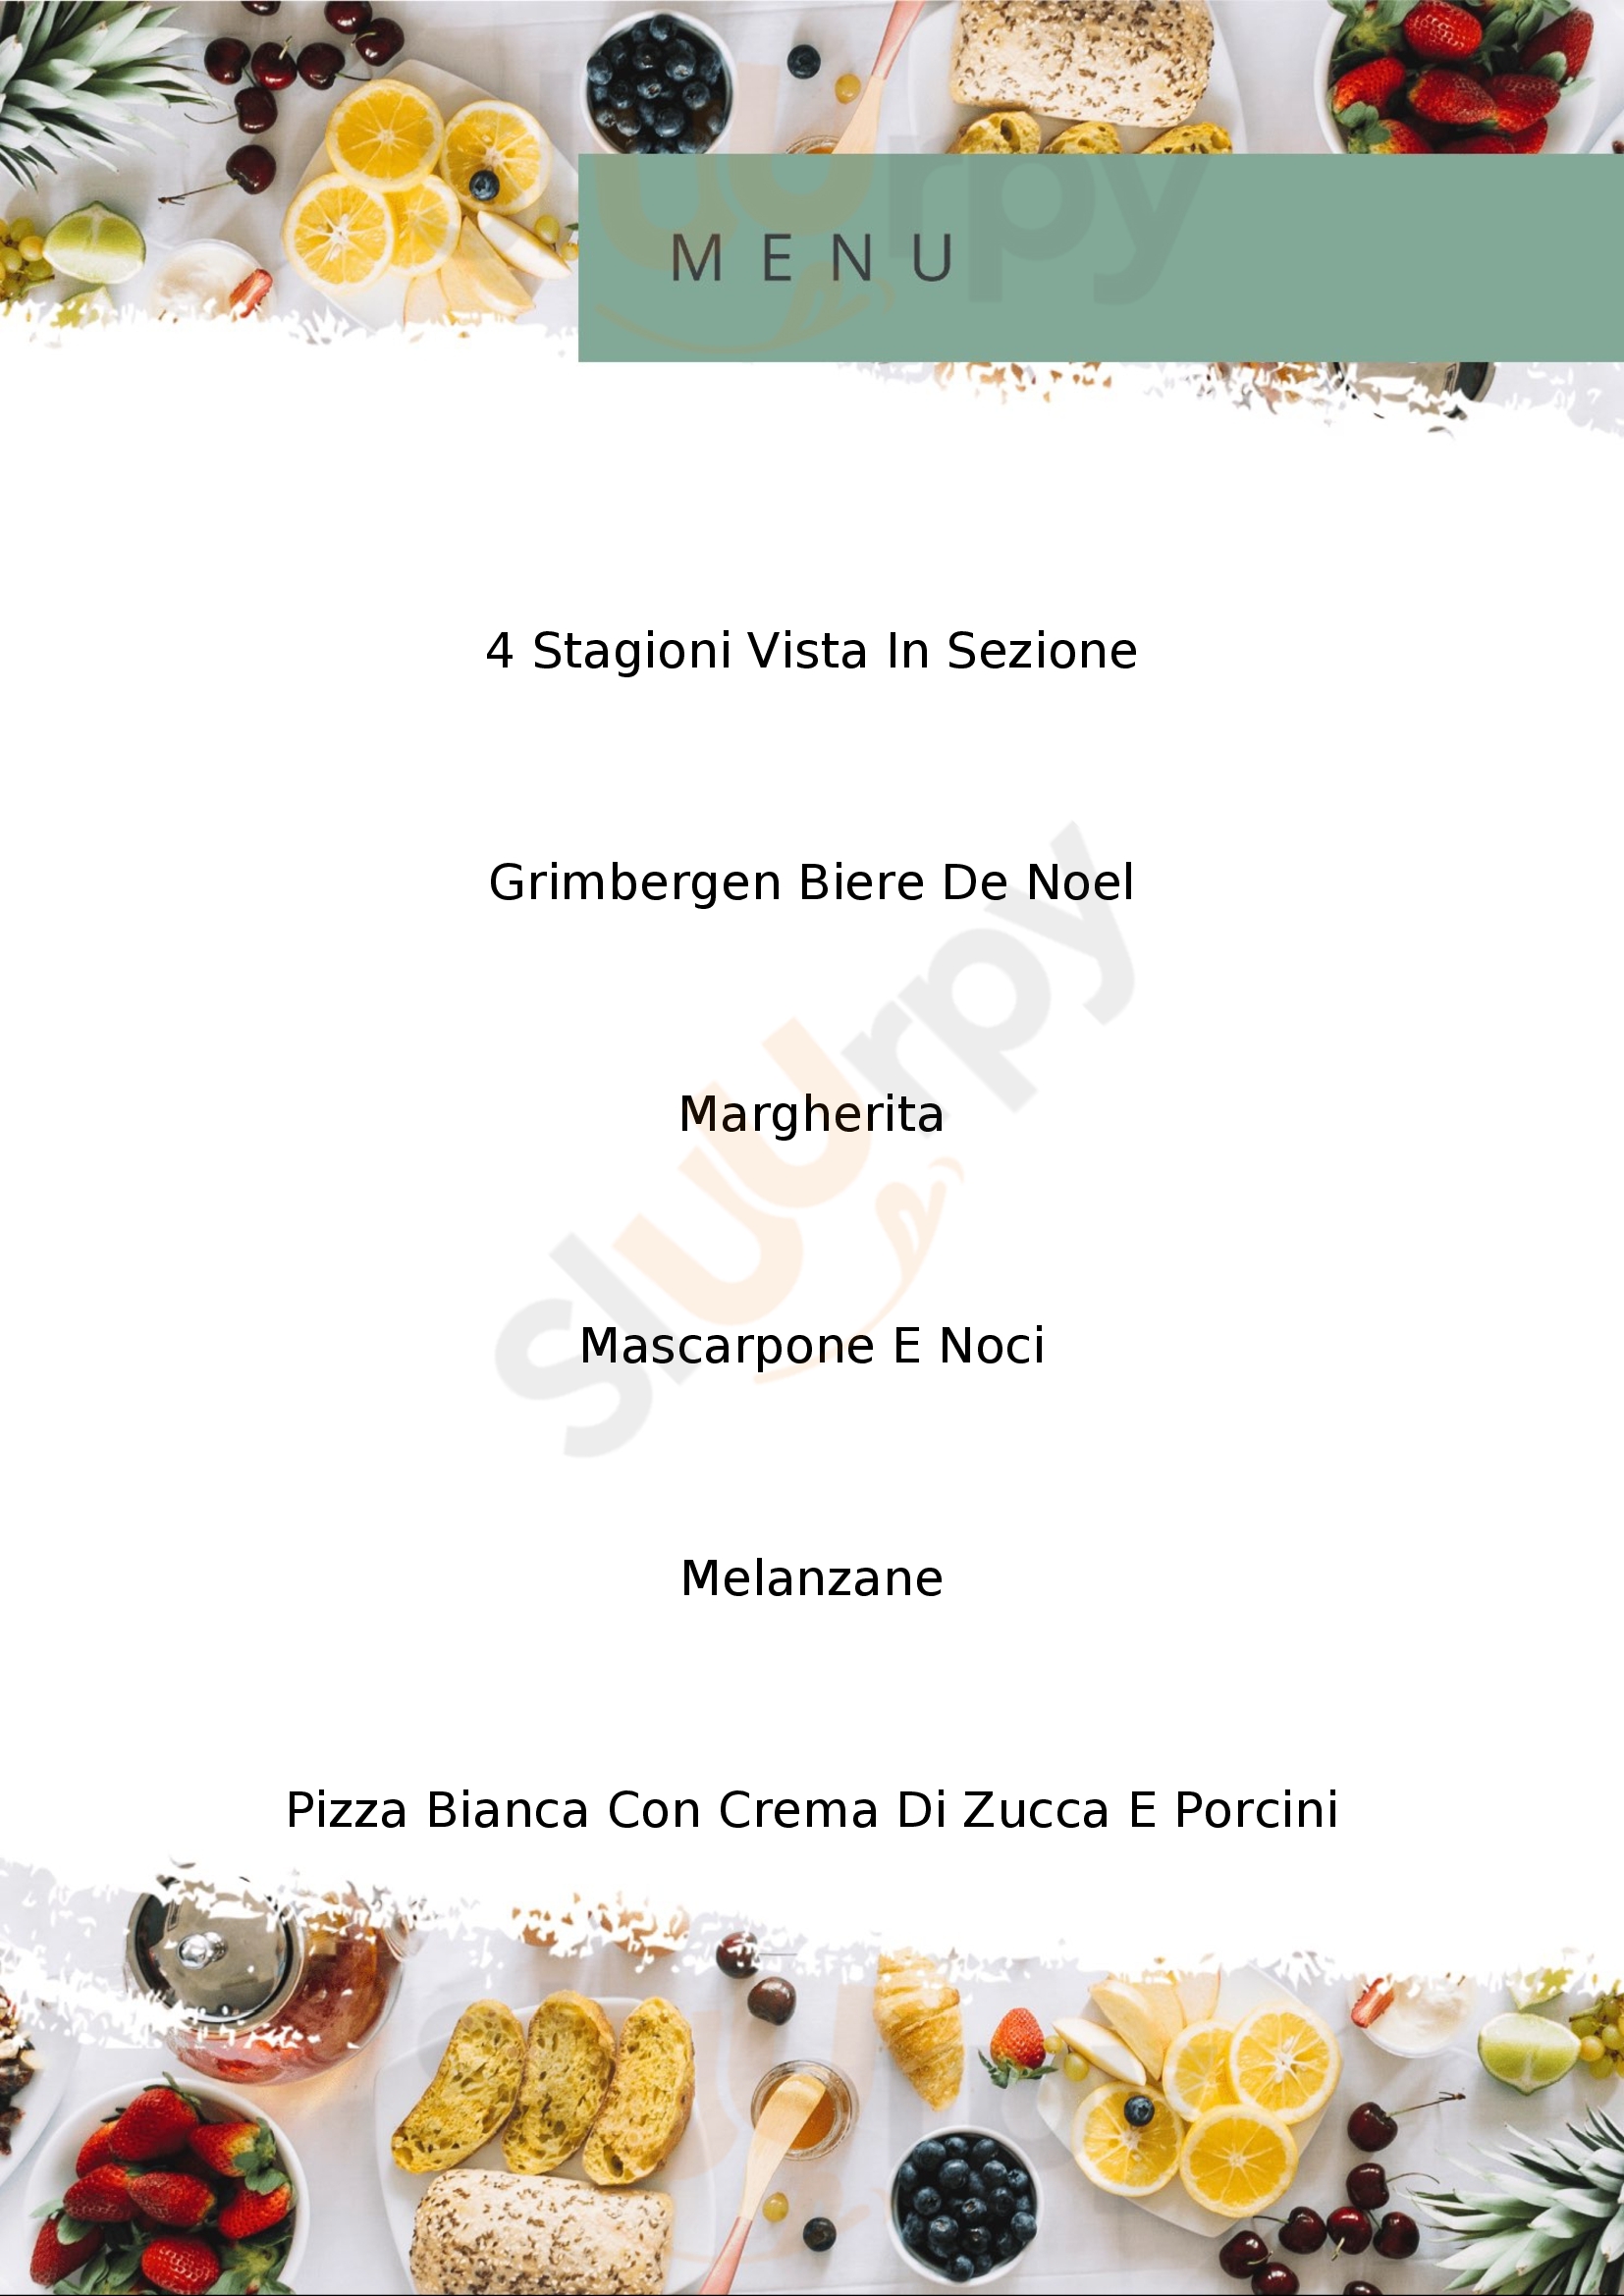 Alla Vecchia Trave Montecchio Maggiore menù 1 pagina